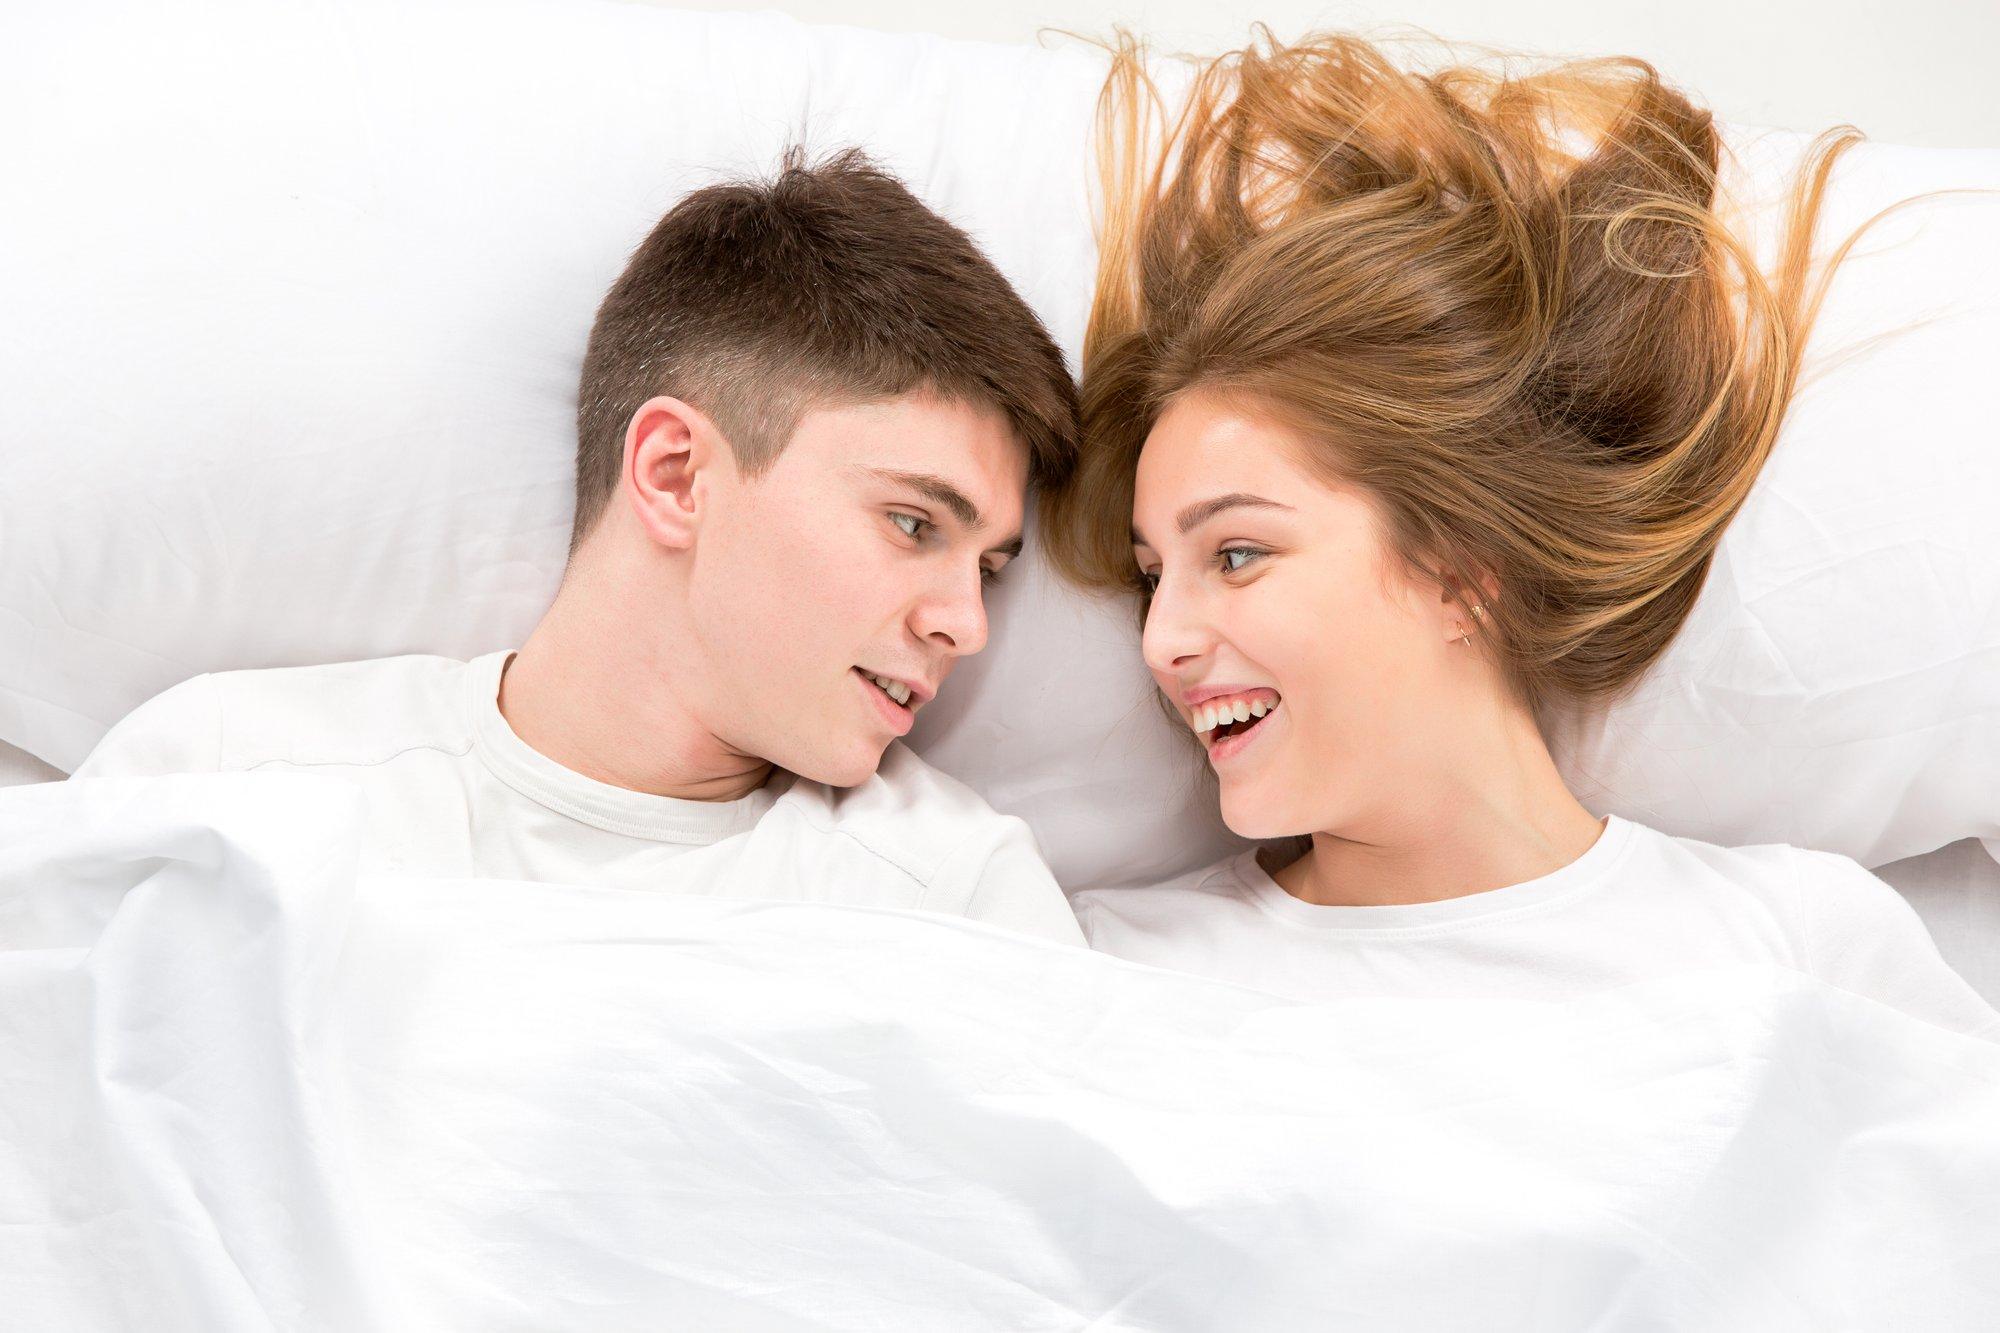 Socialinių tinklų žvaigždė pasakė, kas padidina lovoje patiriamą malonumą: įvardijo tris veiksmingus pratimus